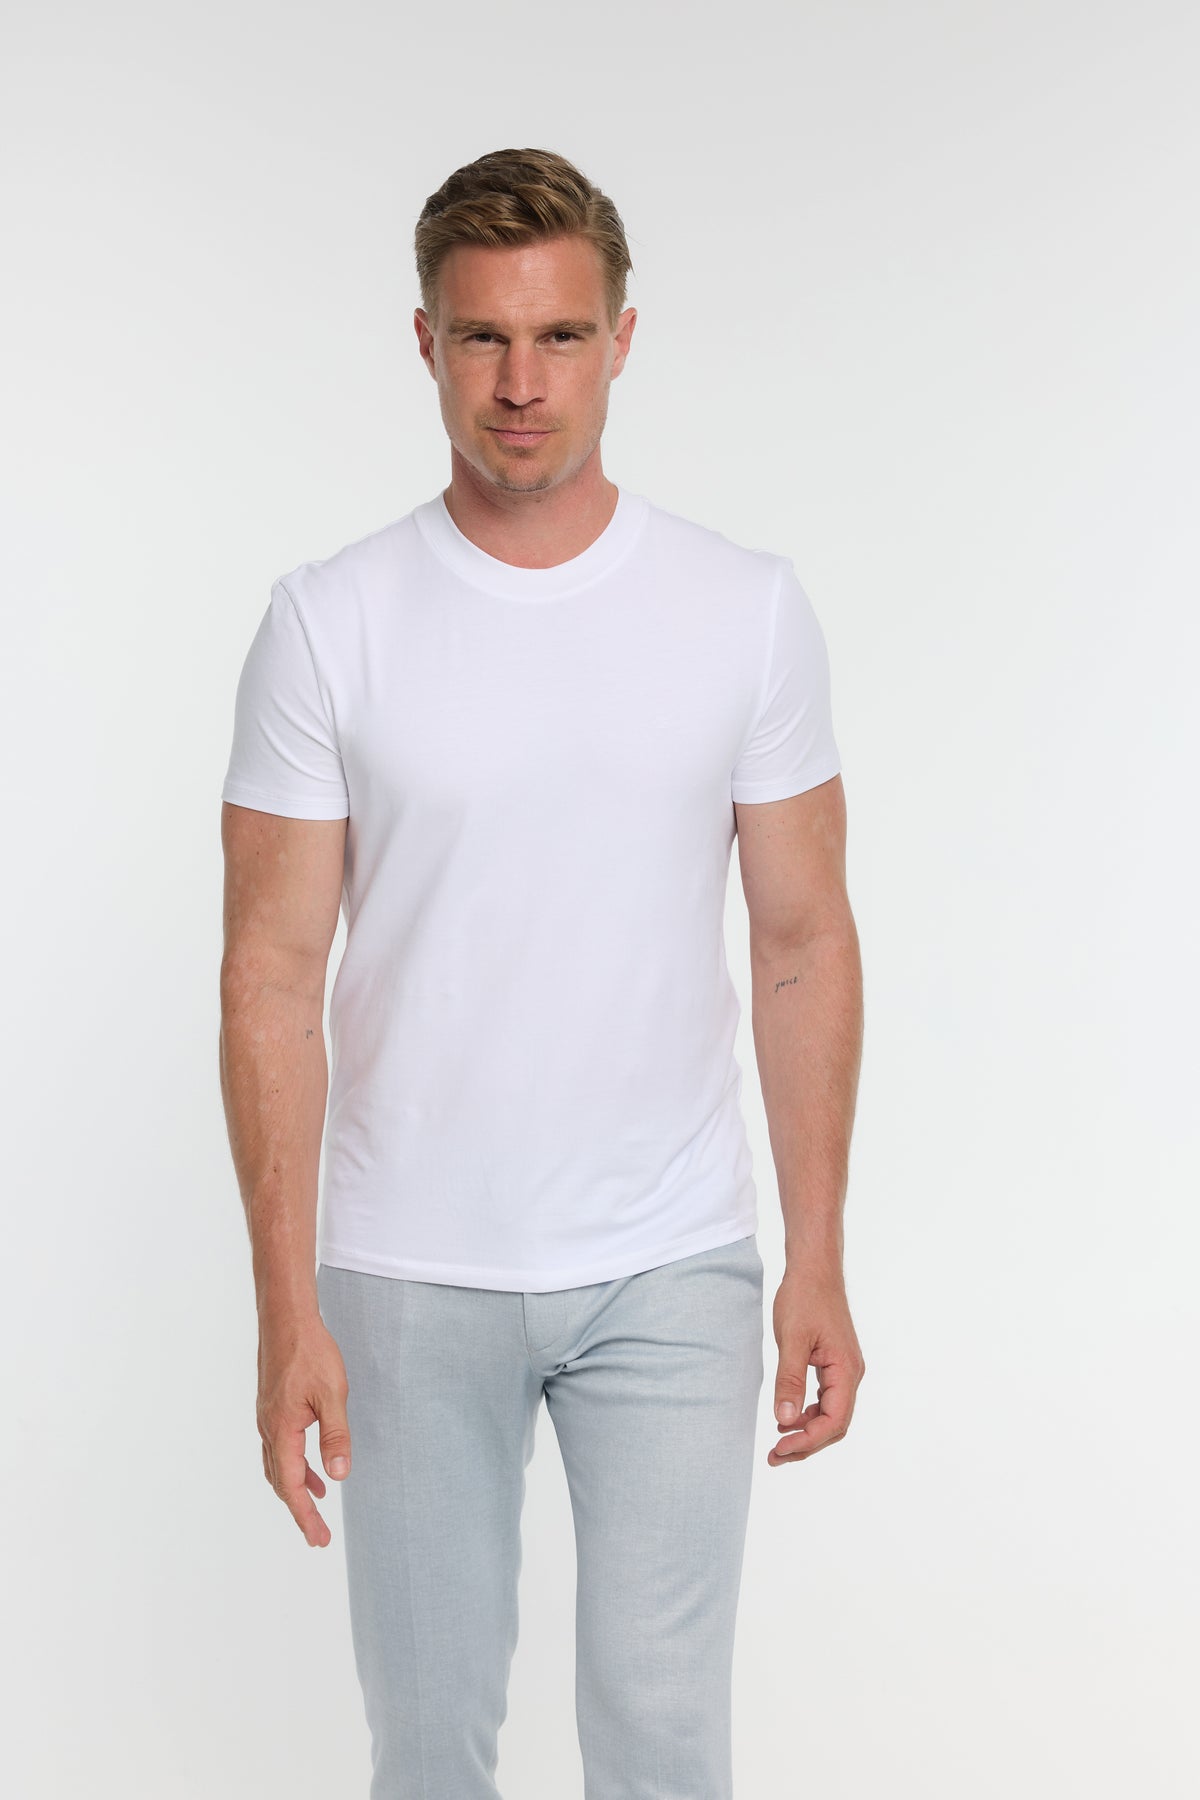 T-Shirt DiFlo 201-100 White